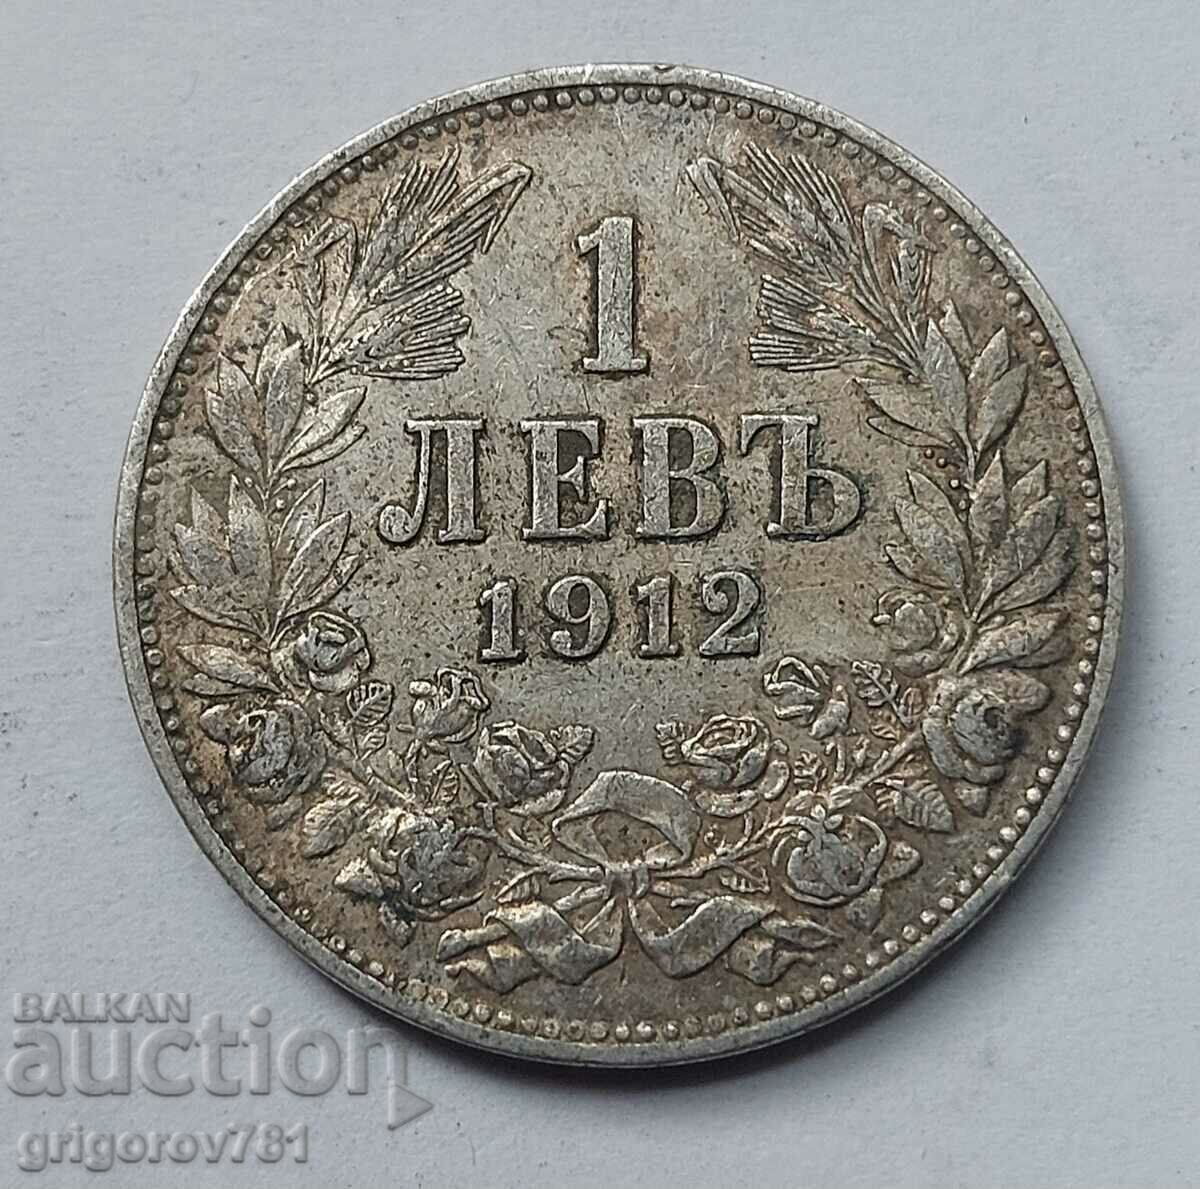 Ασήμι 1 λεβ 1912 - ασημένιο νόμισμα #22